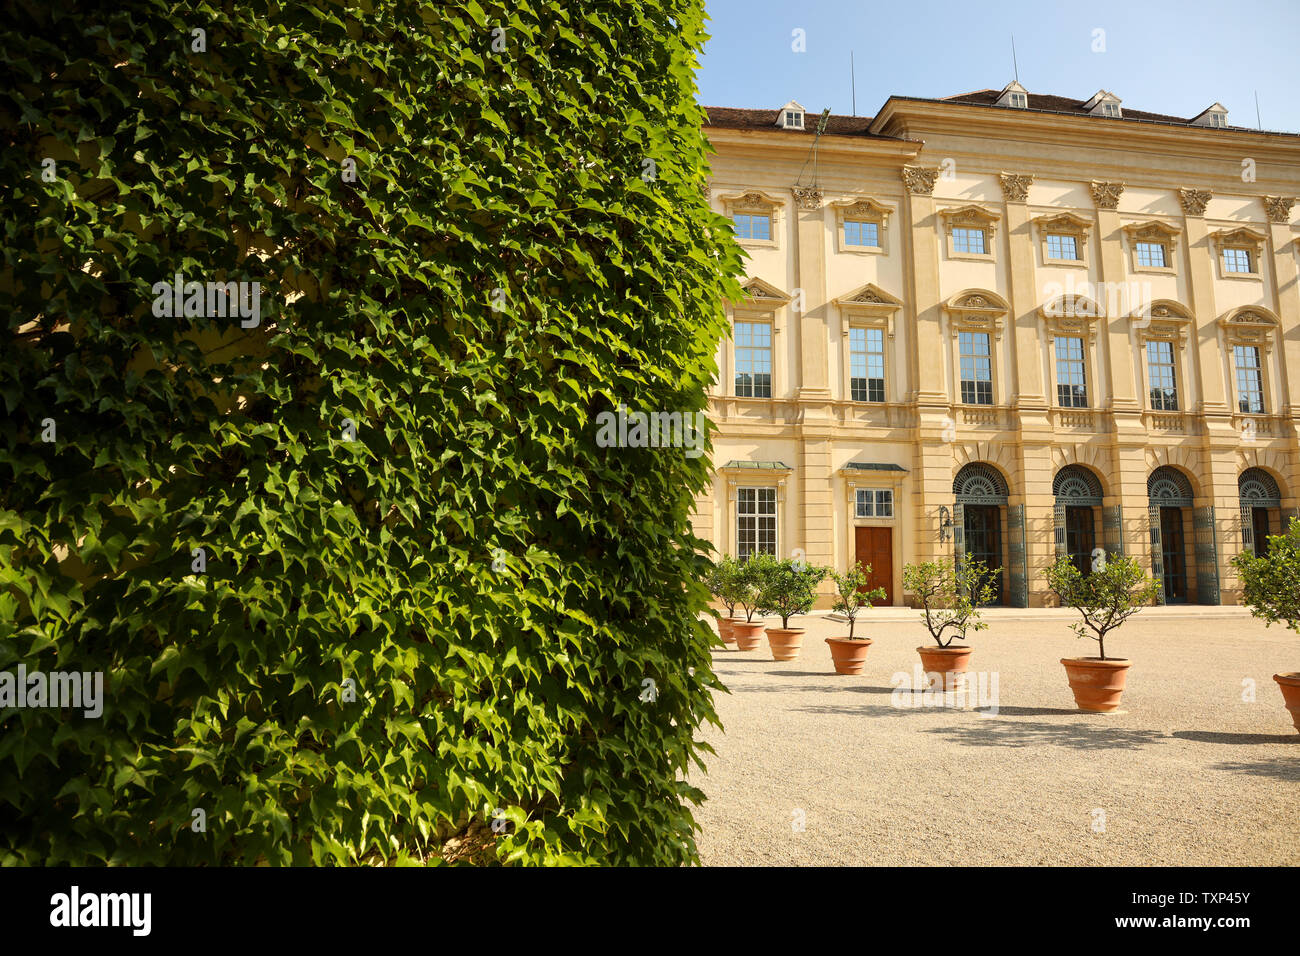 Front view of Palais Liechtenstein in Vienna Stock Photo